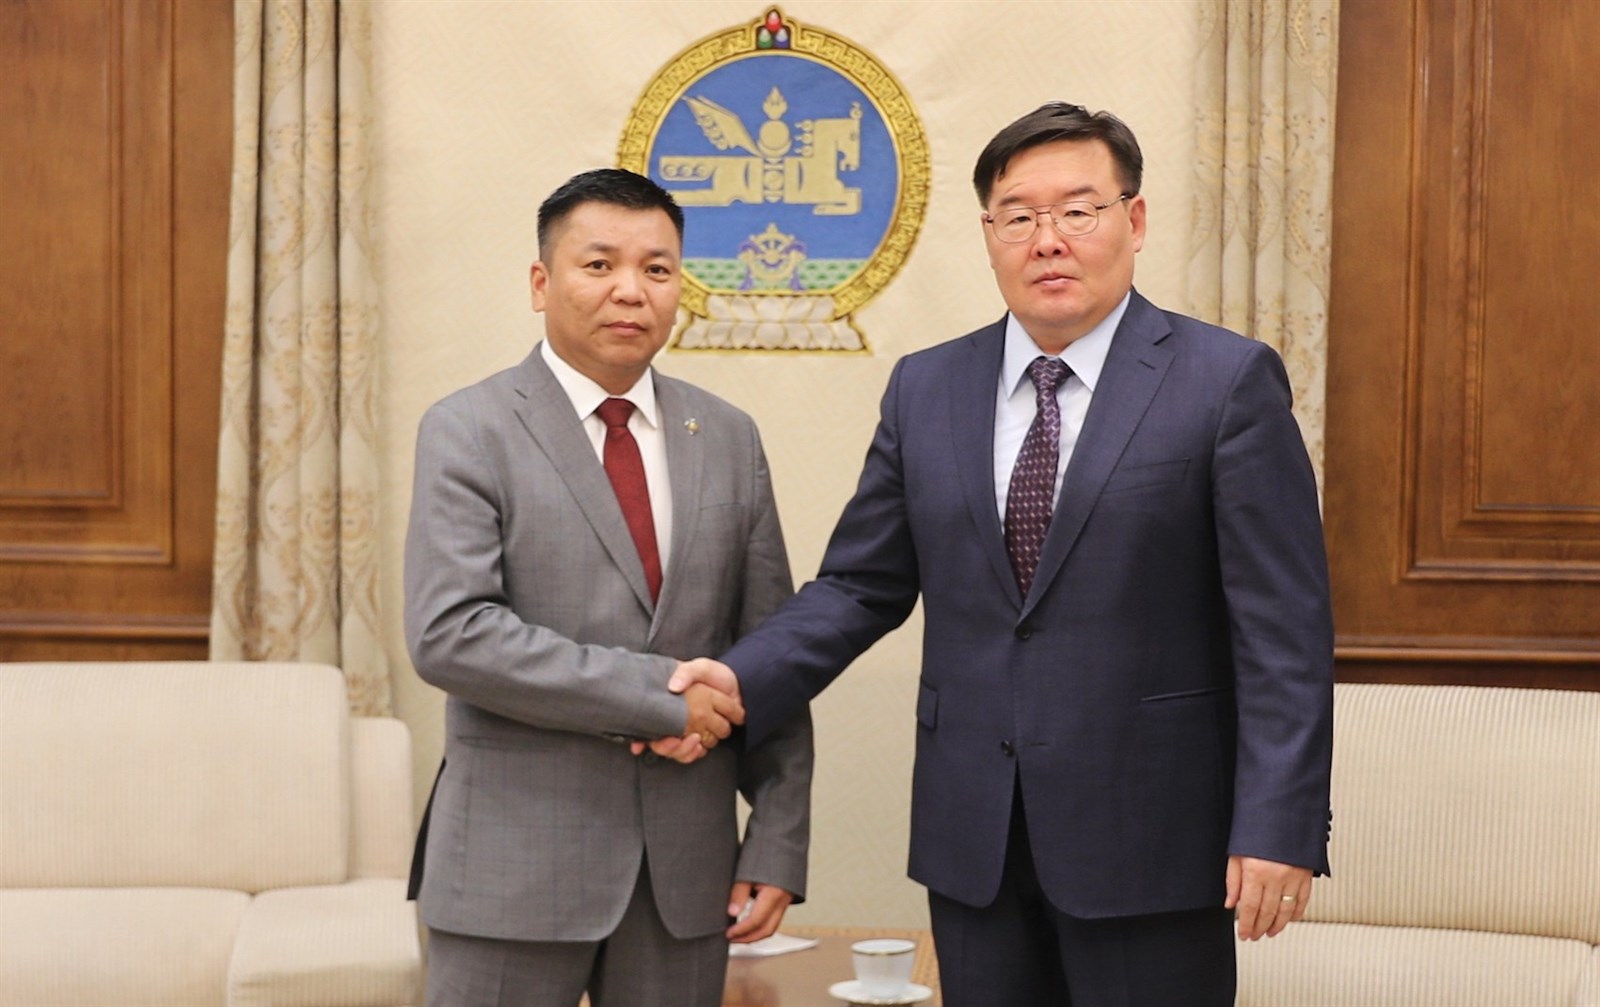 Монгол Улсын Их Хурлын тогтоолд өөрчлөлт оруулах тухай тогтоолын төсөл өргөн барилаа